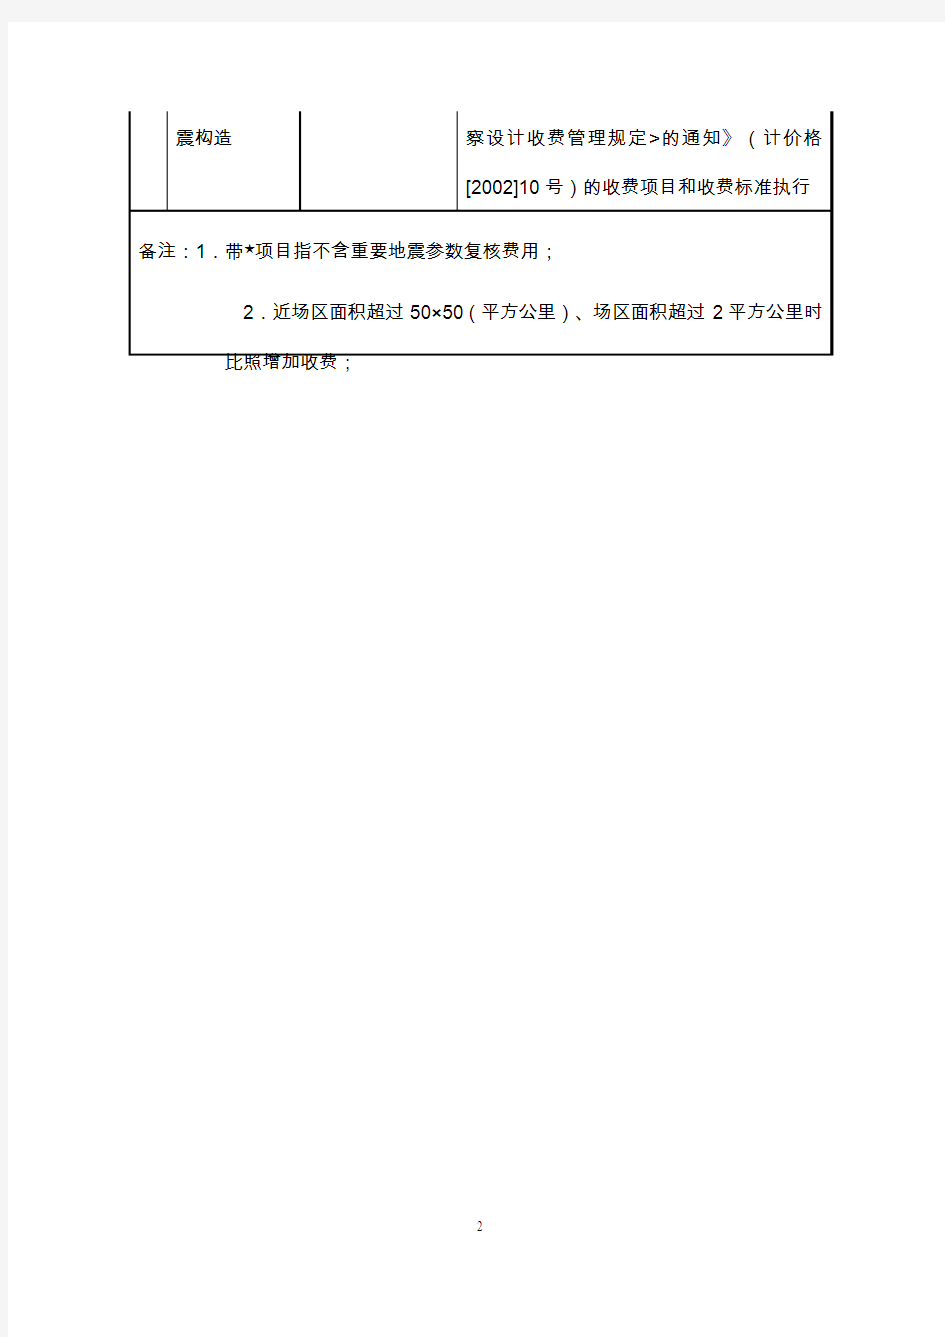 上海地震安全性评价收费项目和收费标准